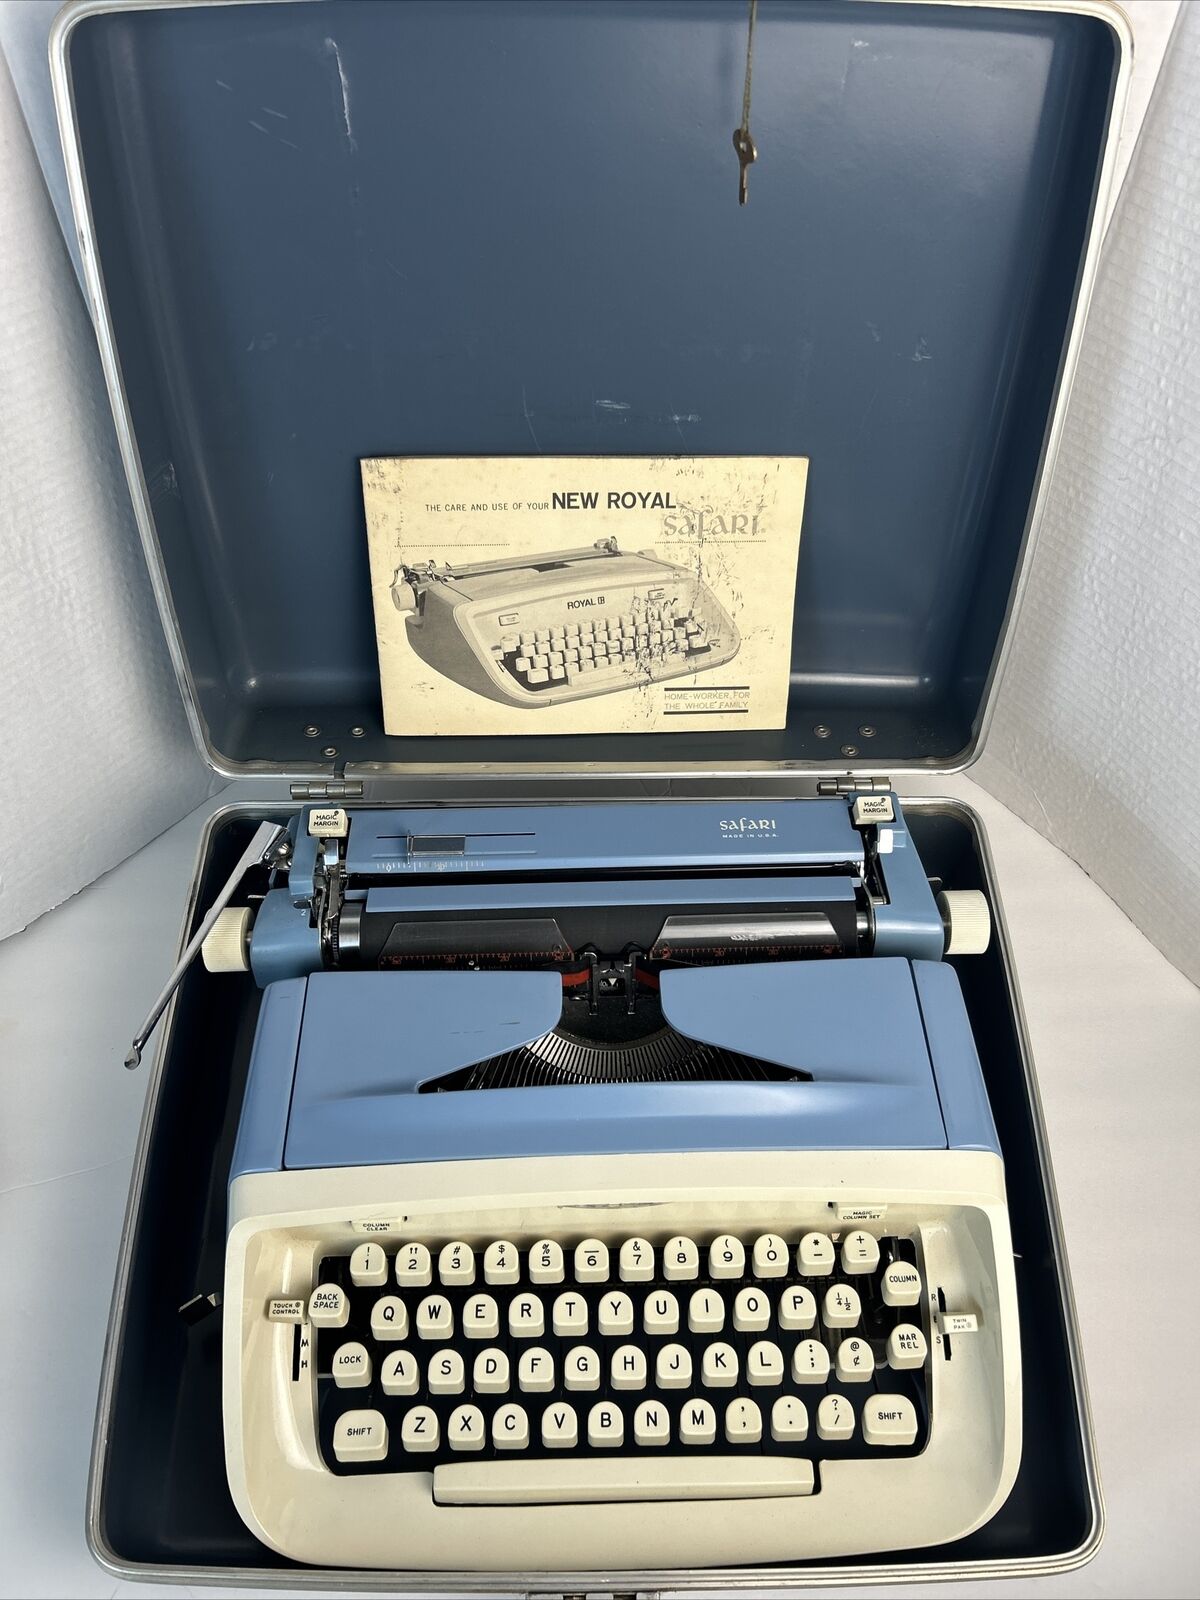 1962 New ROYAL SAFARI Typewriter w/ Case Manual & Original Key 🔑